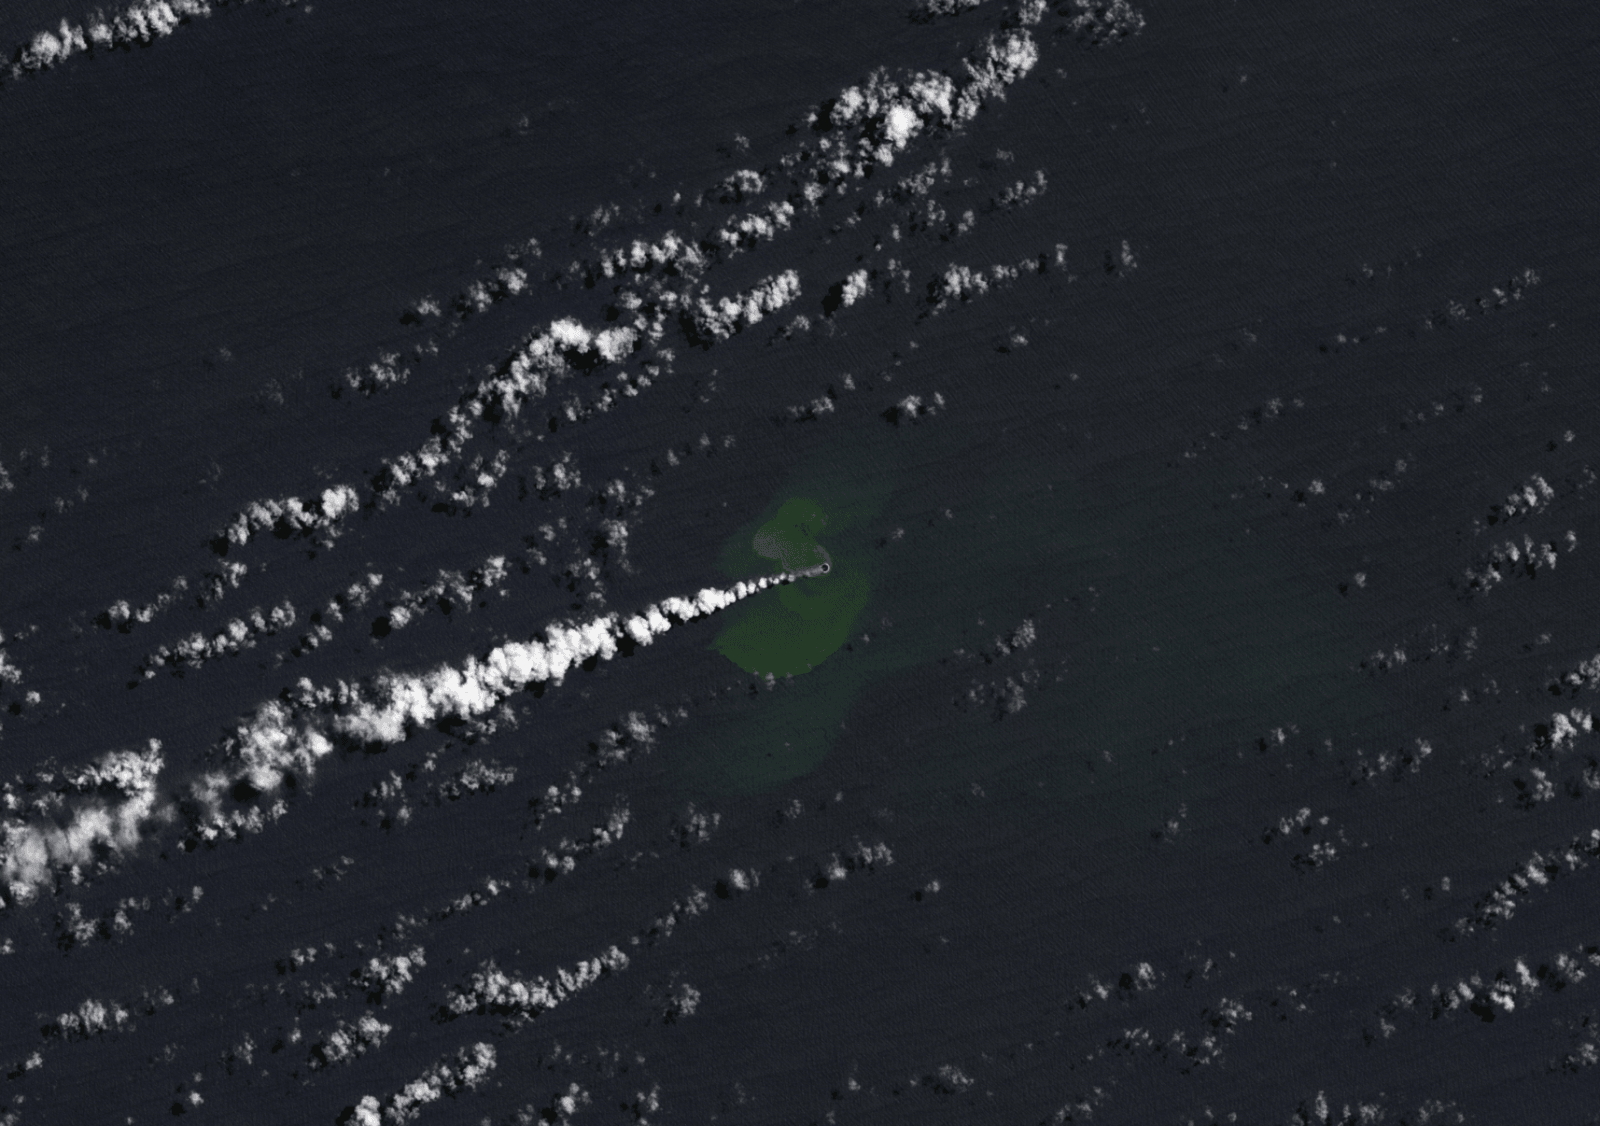 Wyspa utworzona przez wulkan Home Reef /Fot. NASA
